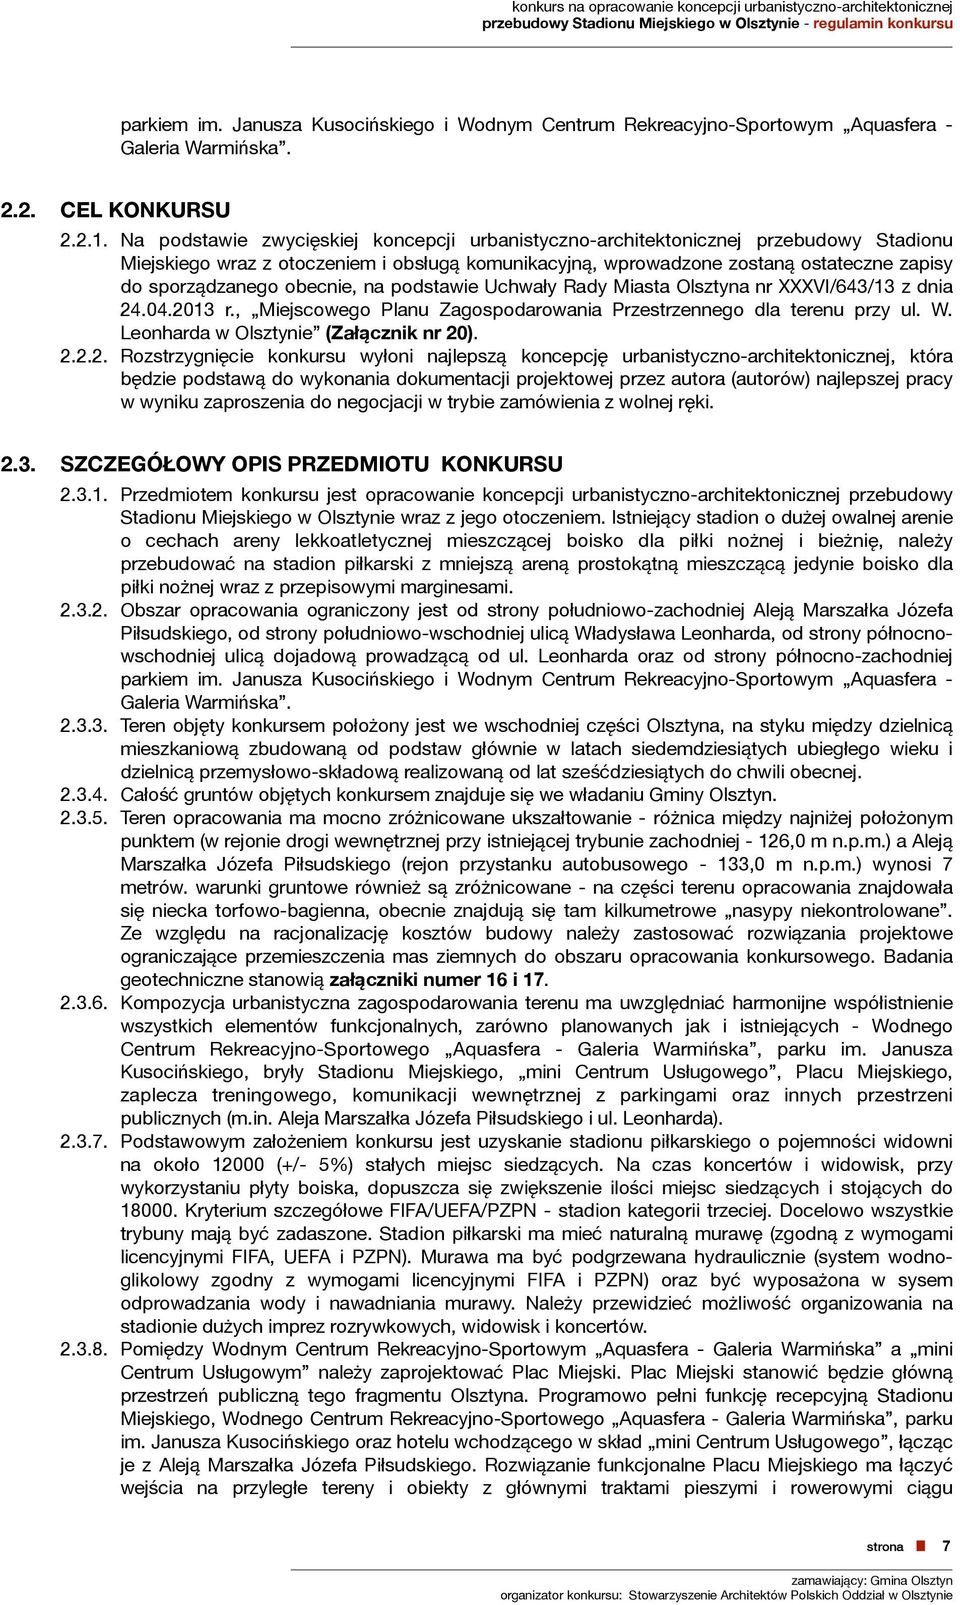 obecnie, na podstawie Uchwały Rady Miasta Olsztyna nr XXXVI/643/13 z dnia 24.04.2013 r., Miejscowego Planu Zagospodarowania Przestrzennego dla terenu przy ul. W.